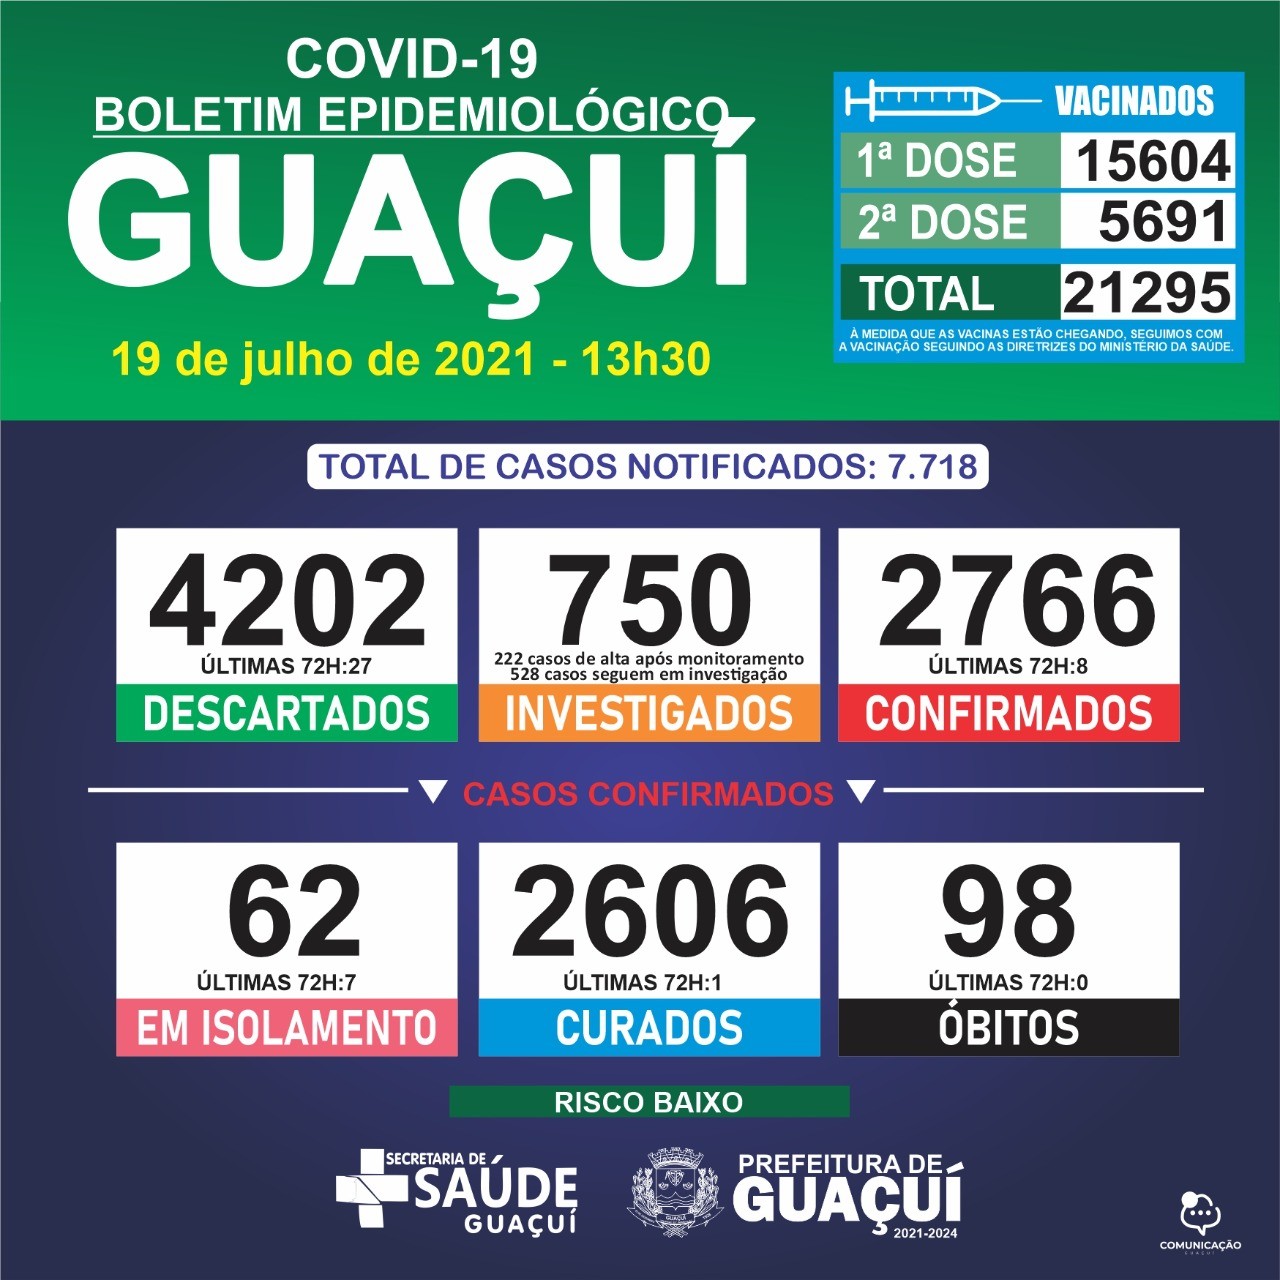 Boletim Epidemiológico 19/07/21: Guaçuí registra 8 casos confirmados e 1 curado nas últimas 72 horas